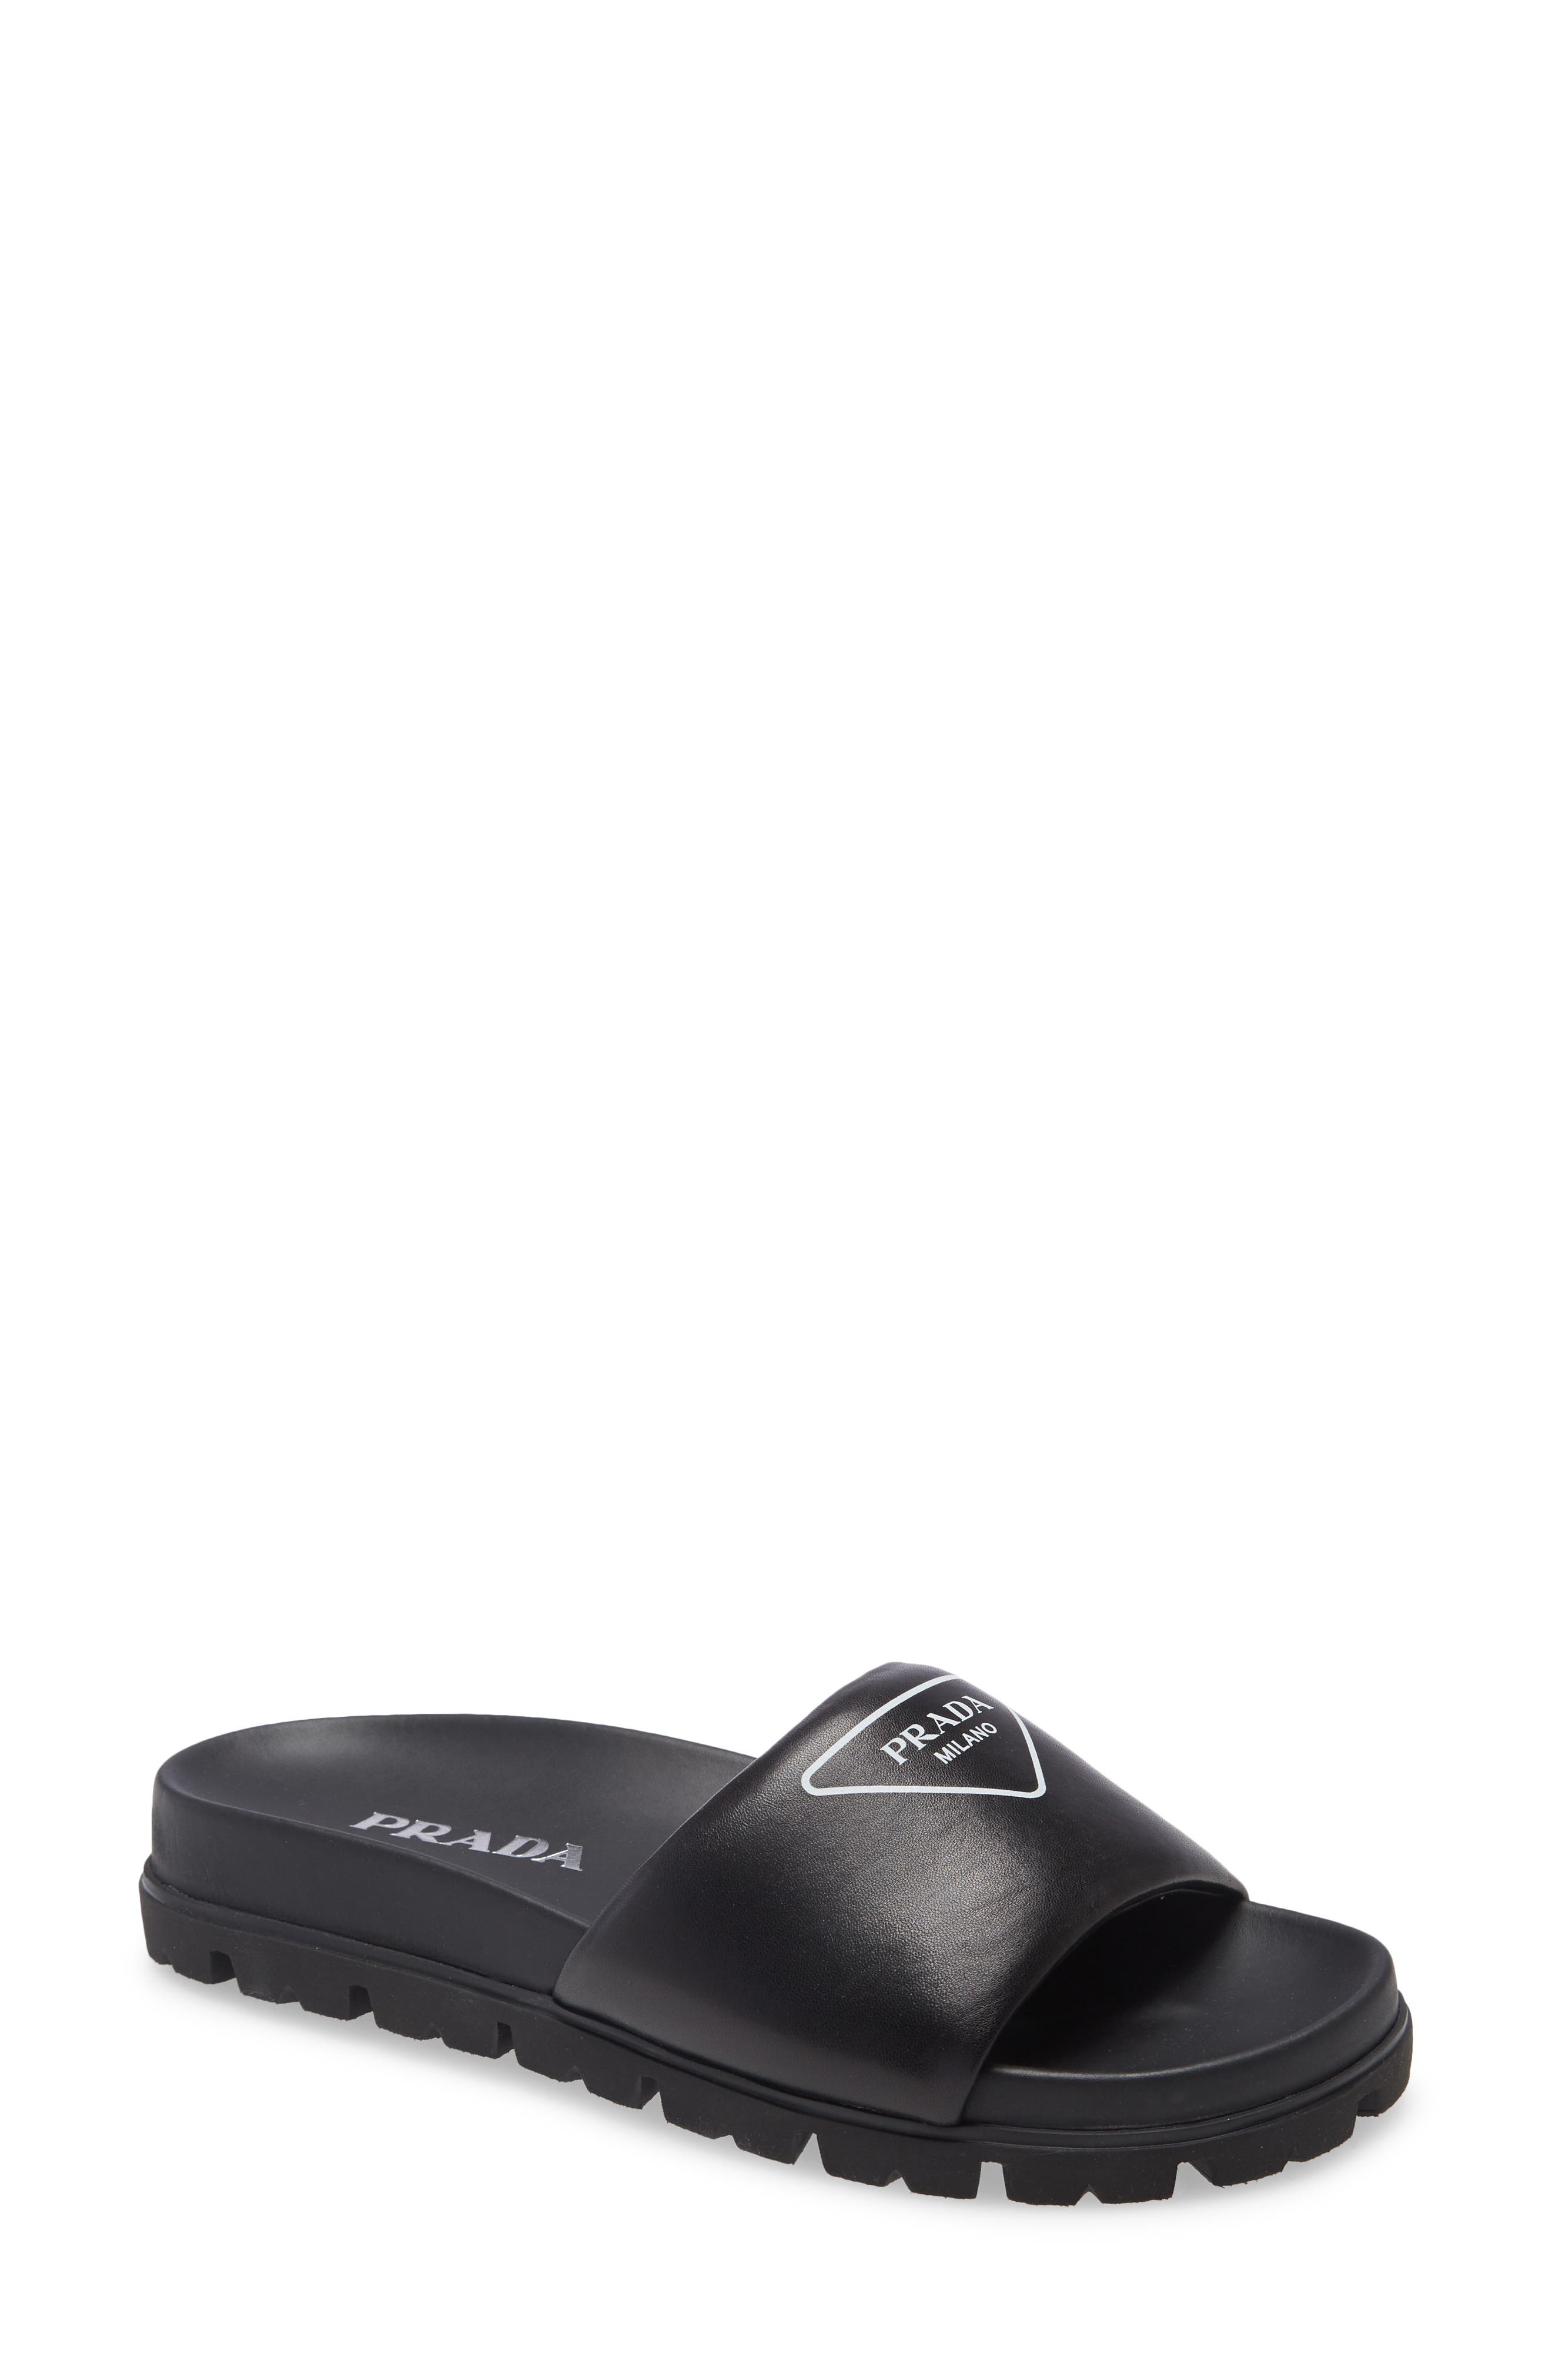 Prada Logo Slide Sandal in Nero at Nordstrom, Size 7Us